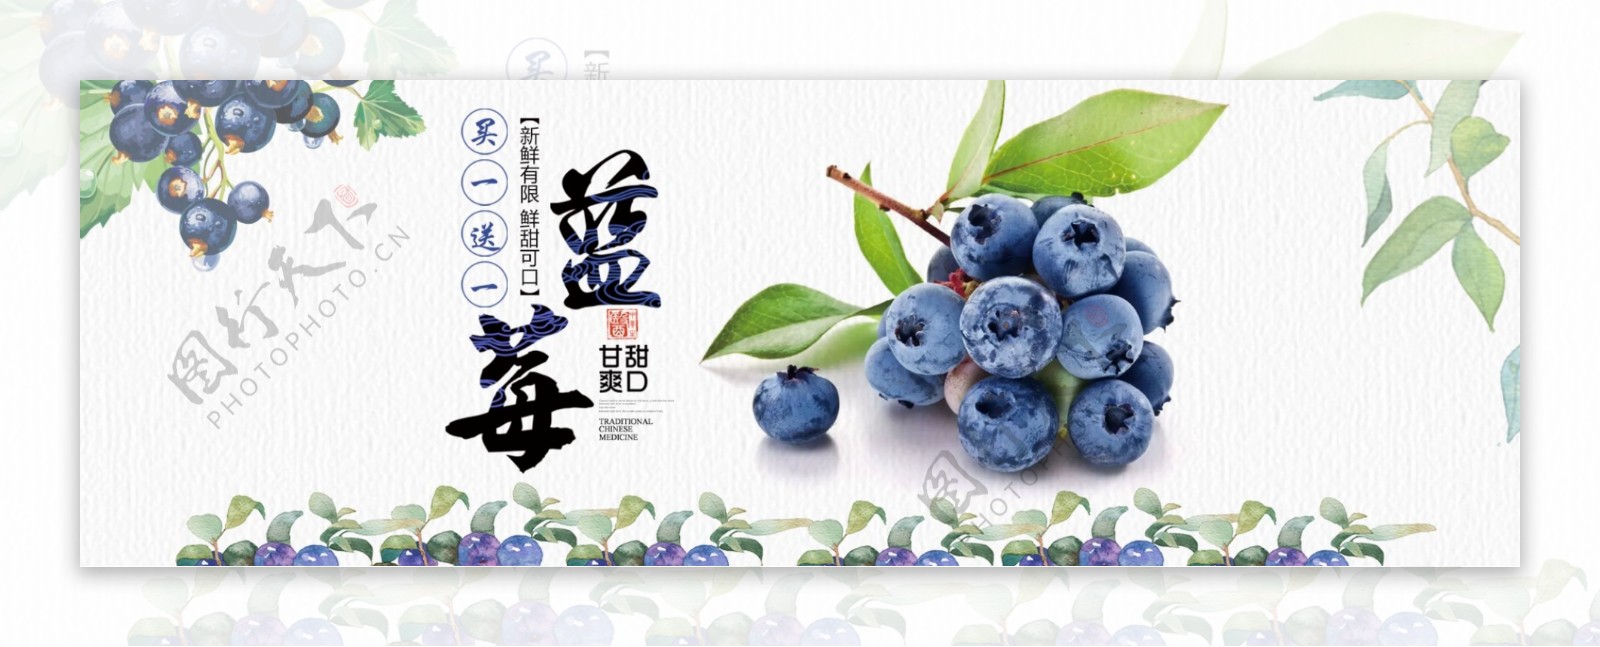 清新文艺水果生鲜食品蓝莓淘宝banner